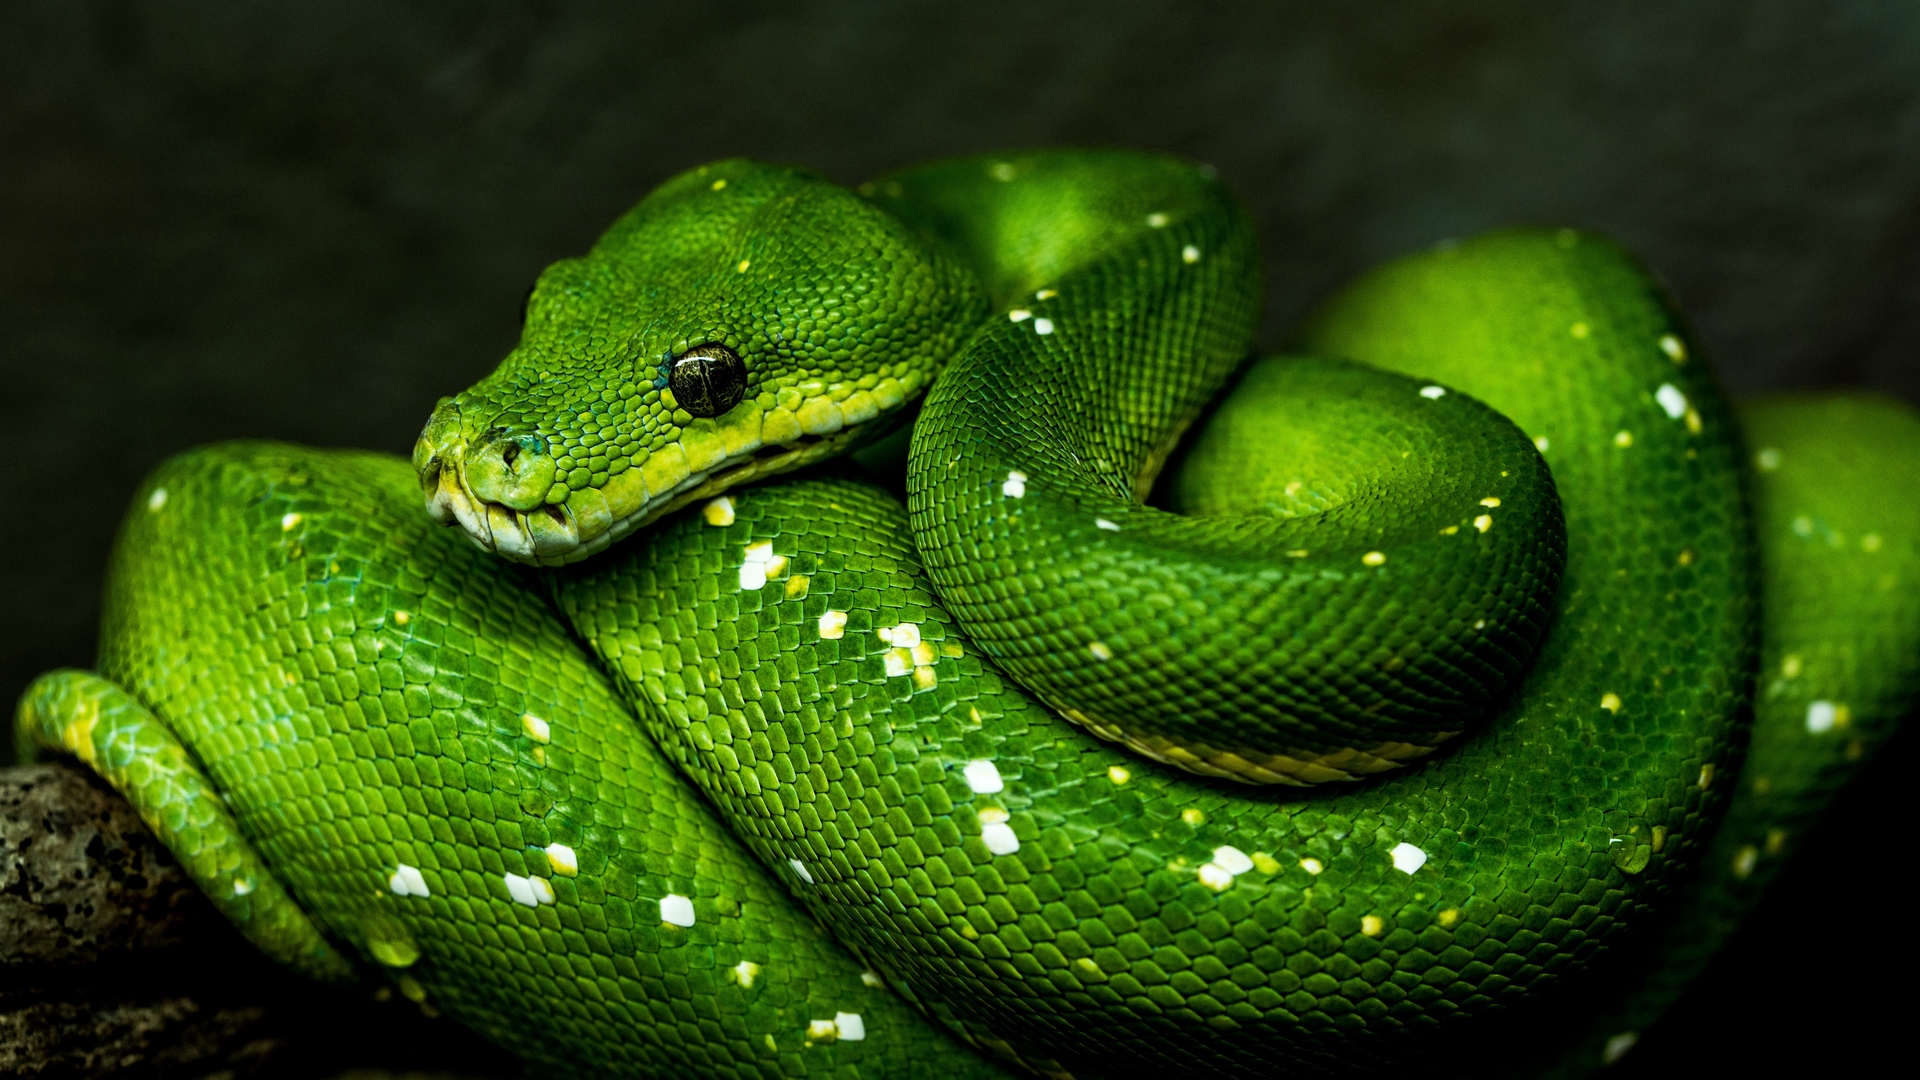 ヘビ壁紙フルhd,爬虫類,ヘビ,蛇,なめらかなヘビ,緑